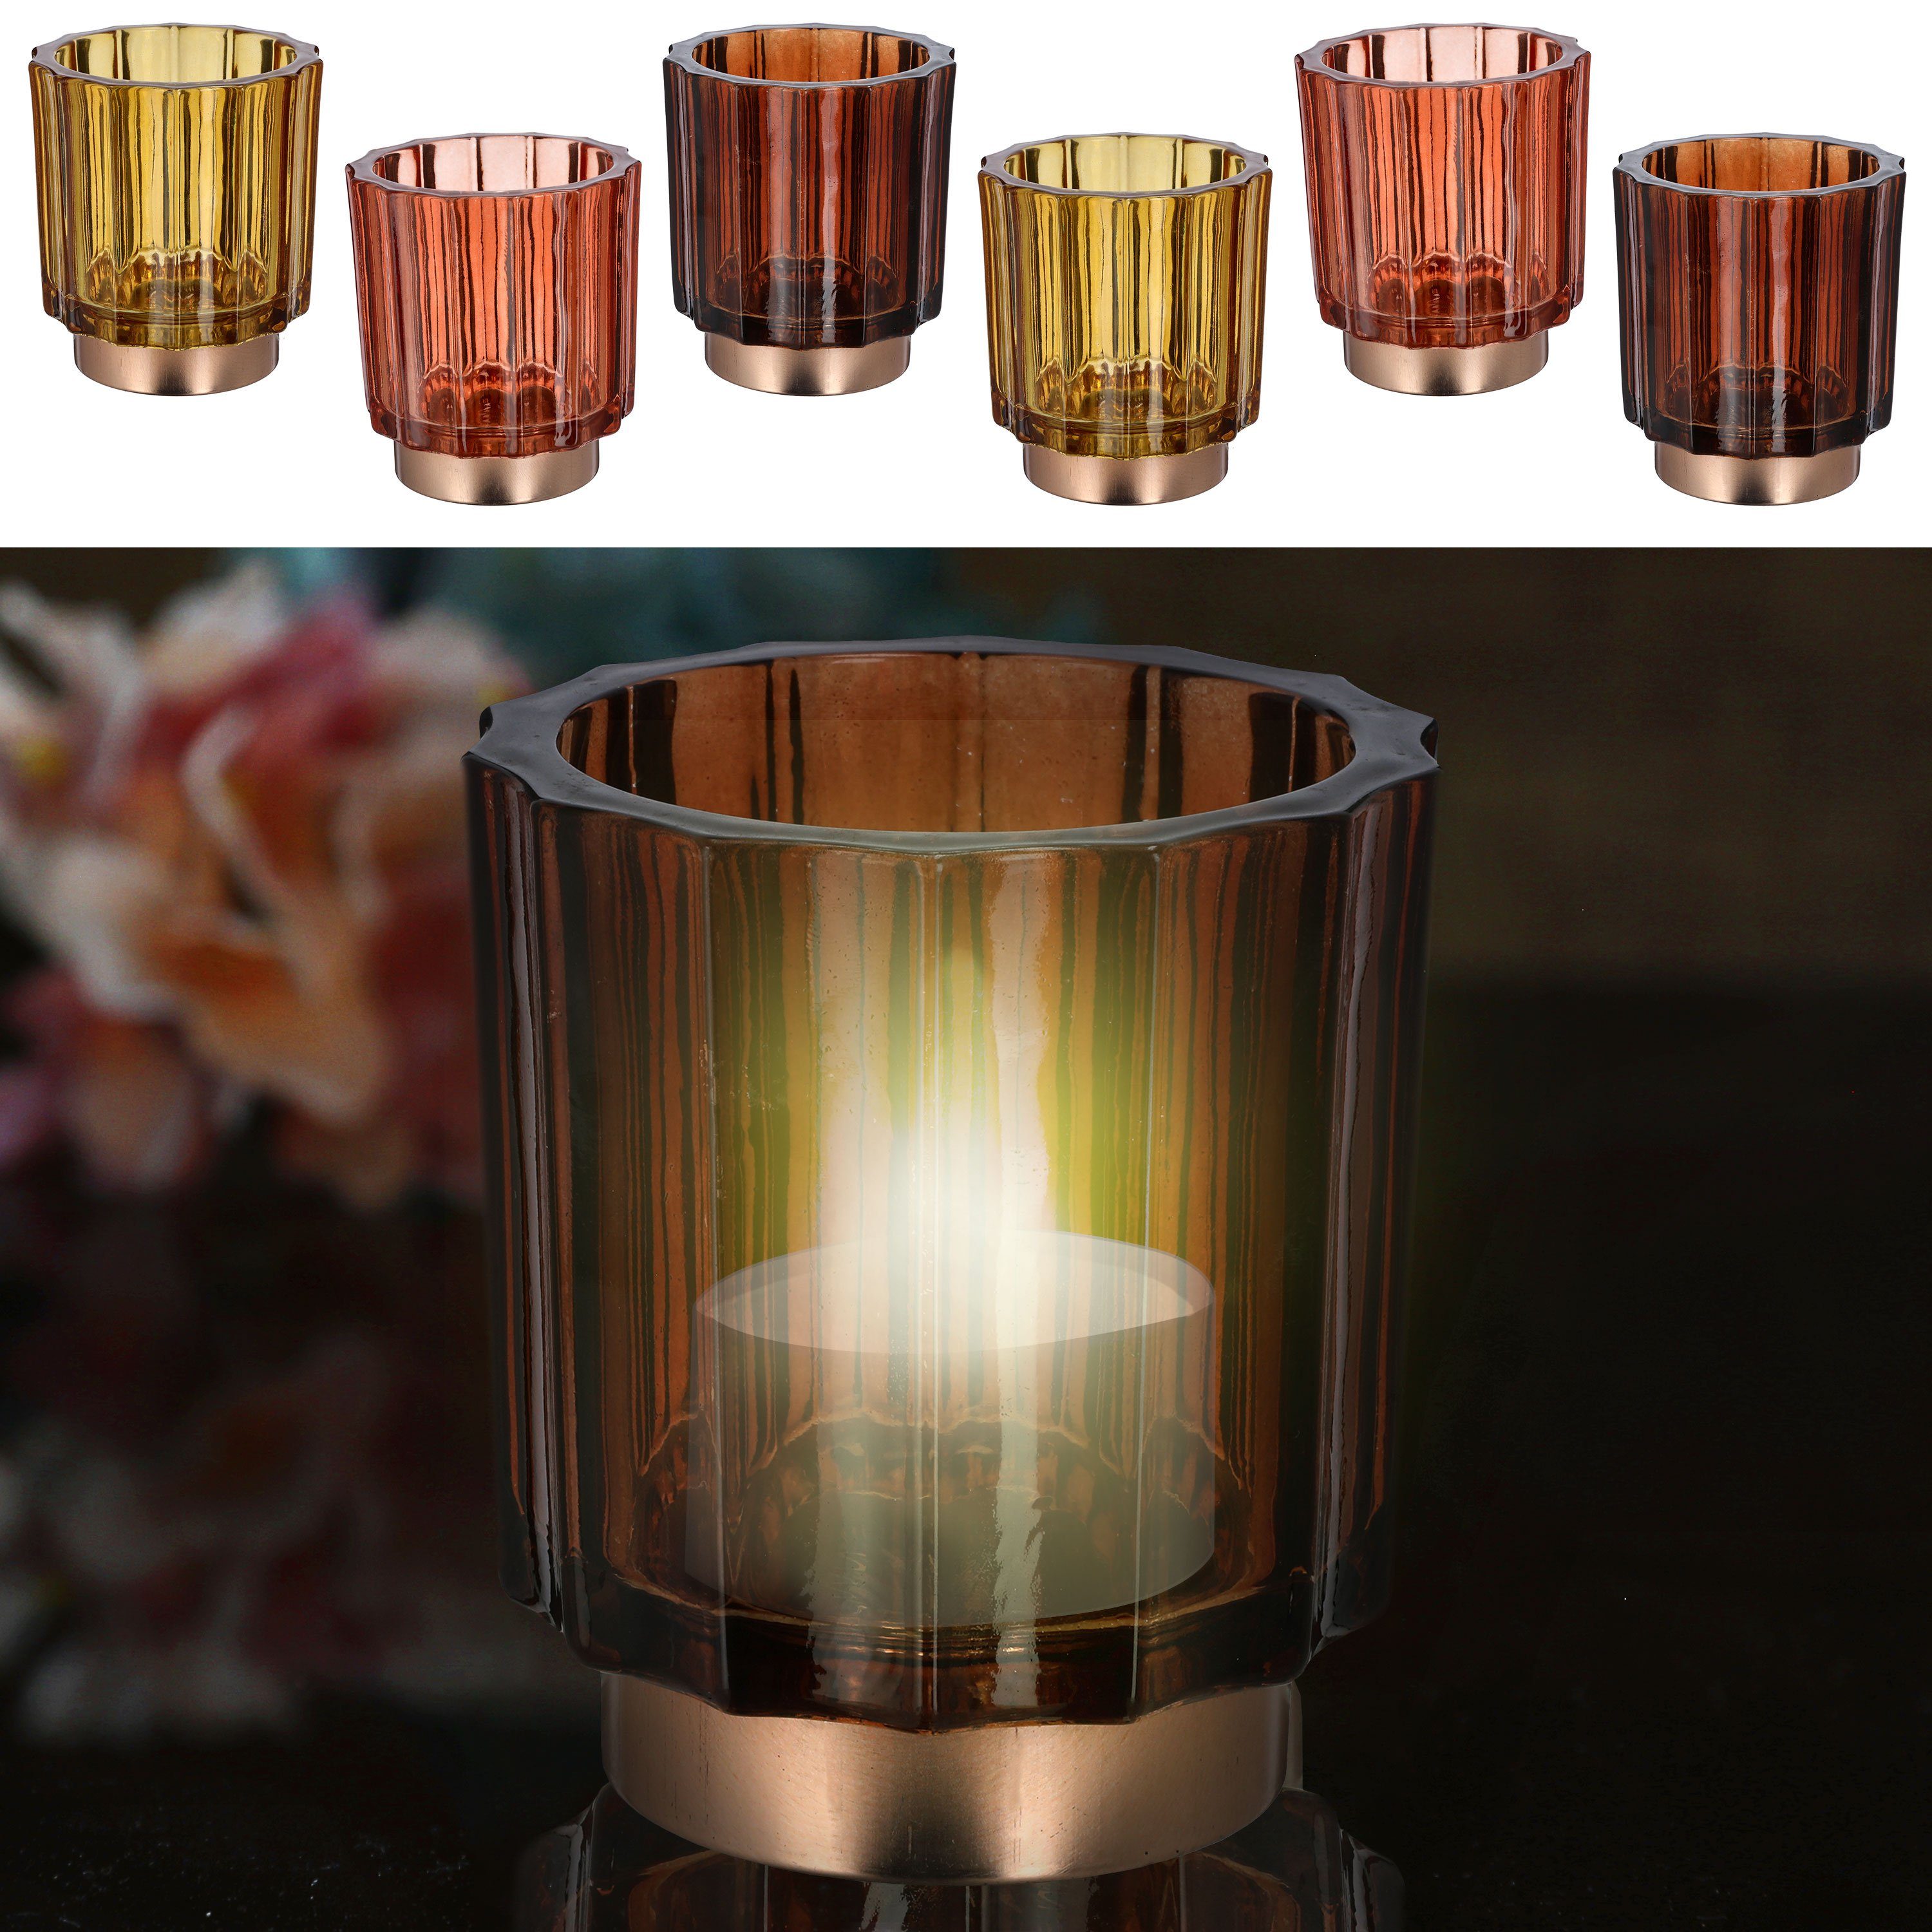 CEPEWA Teelichthalter Sockel Set 9,2x10cm 3 Farben Glas 3er Windlicht